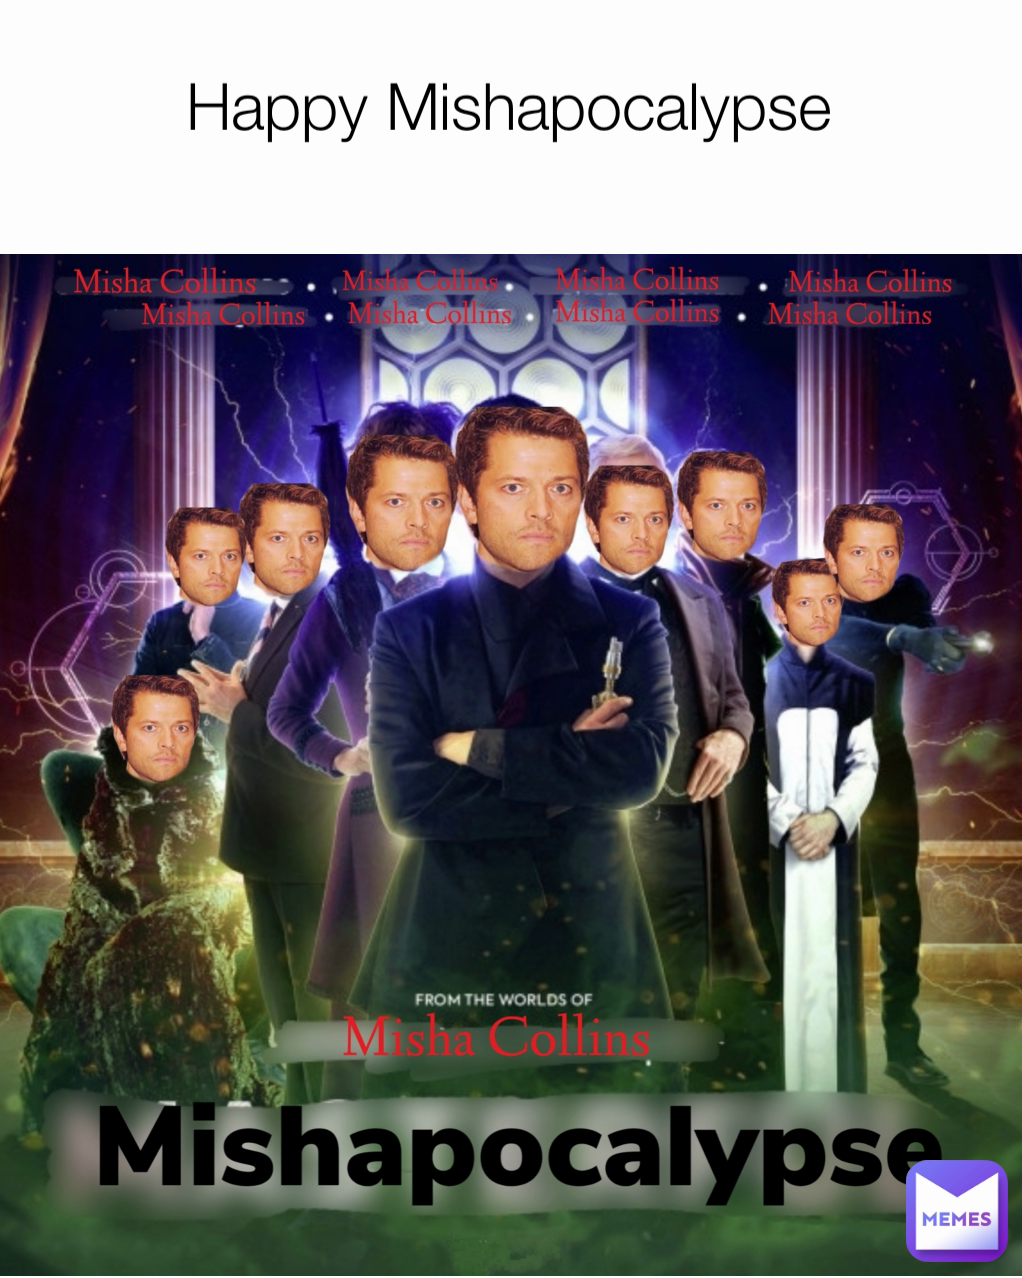 
Happy Mishapocalypse 